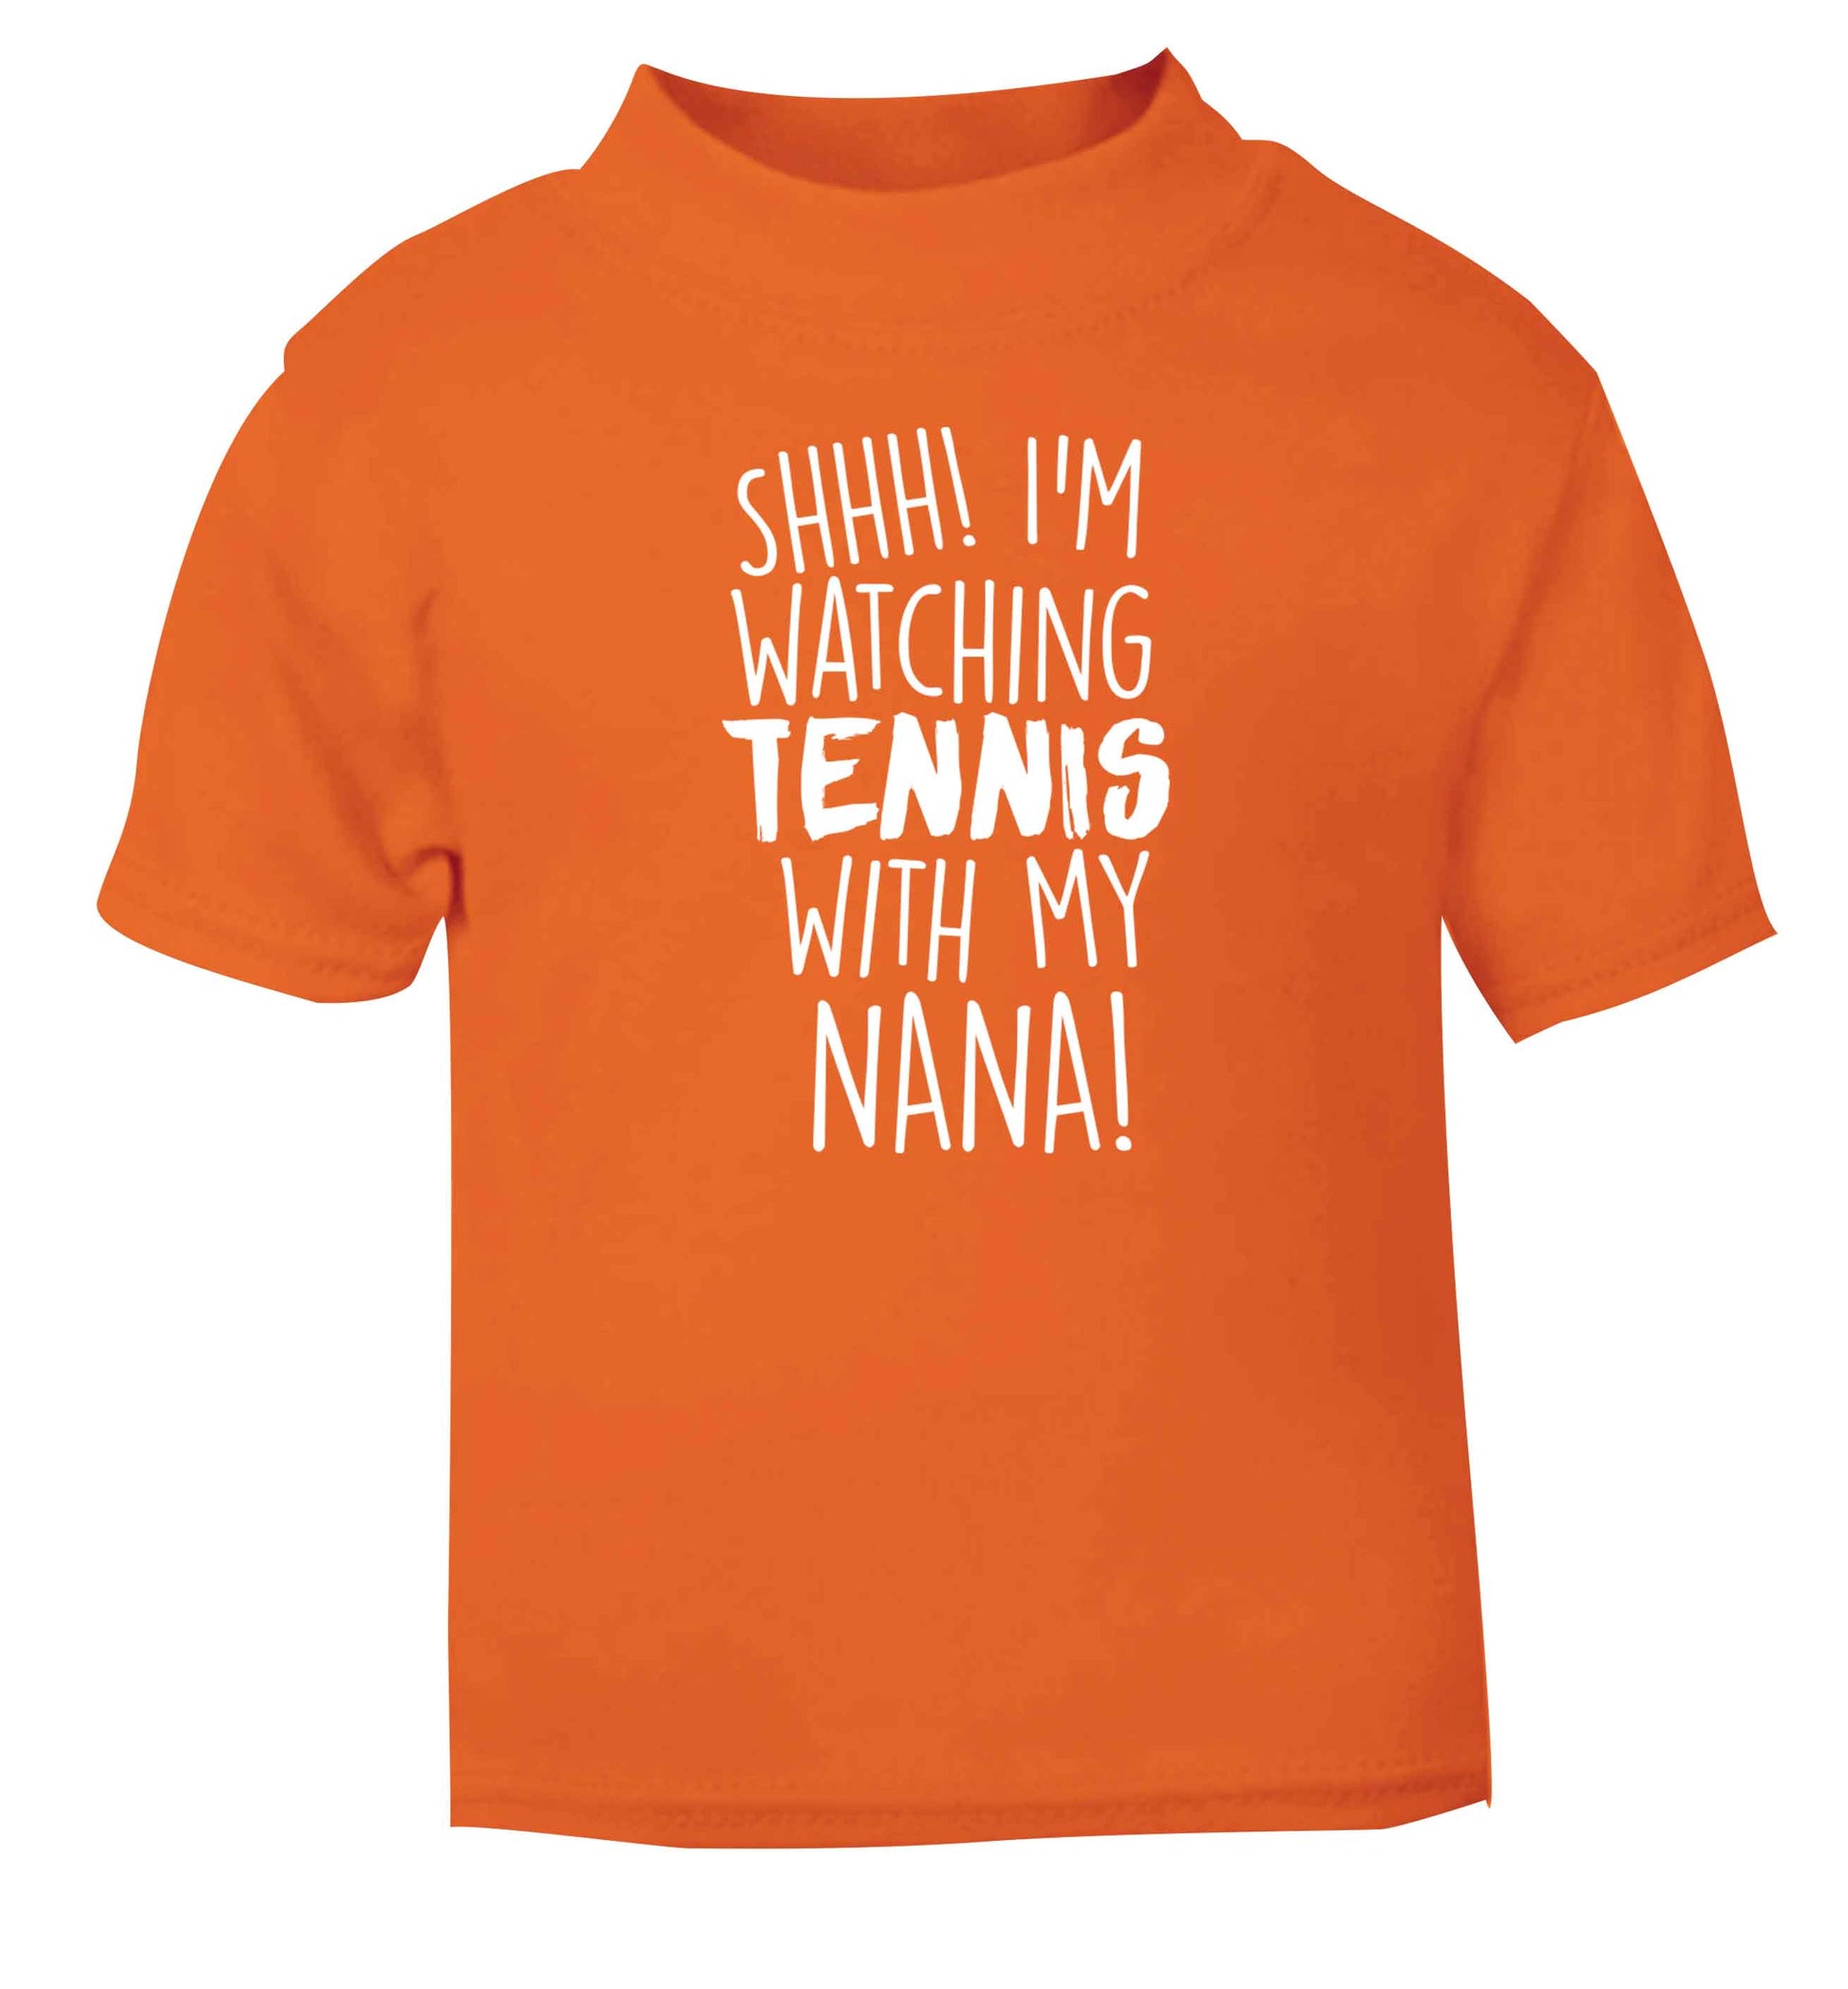 Shh! I'm watching tennis with my nana! orange Baby Toddler Tshirt 2 Years